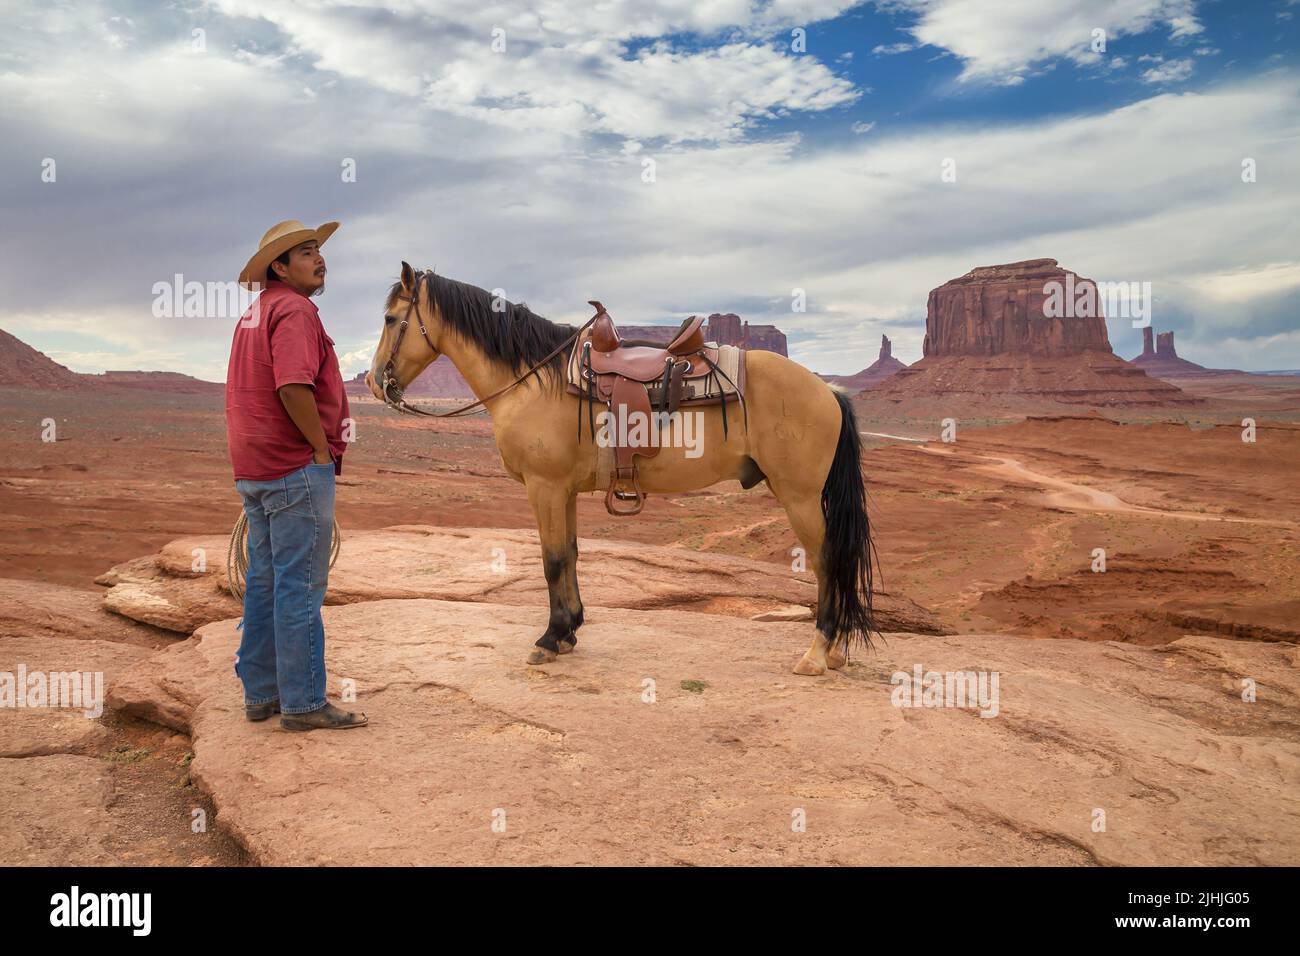 Oljato-Monument Valley, Arizona - 4. September 2019: Navajo Indianer mit einem Pferd am John Ford Point in Monument Valley, Arizona, United St Stockfoto